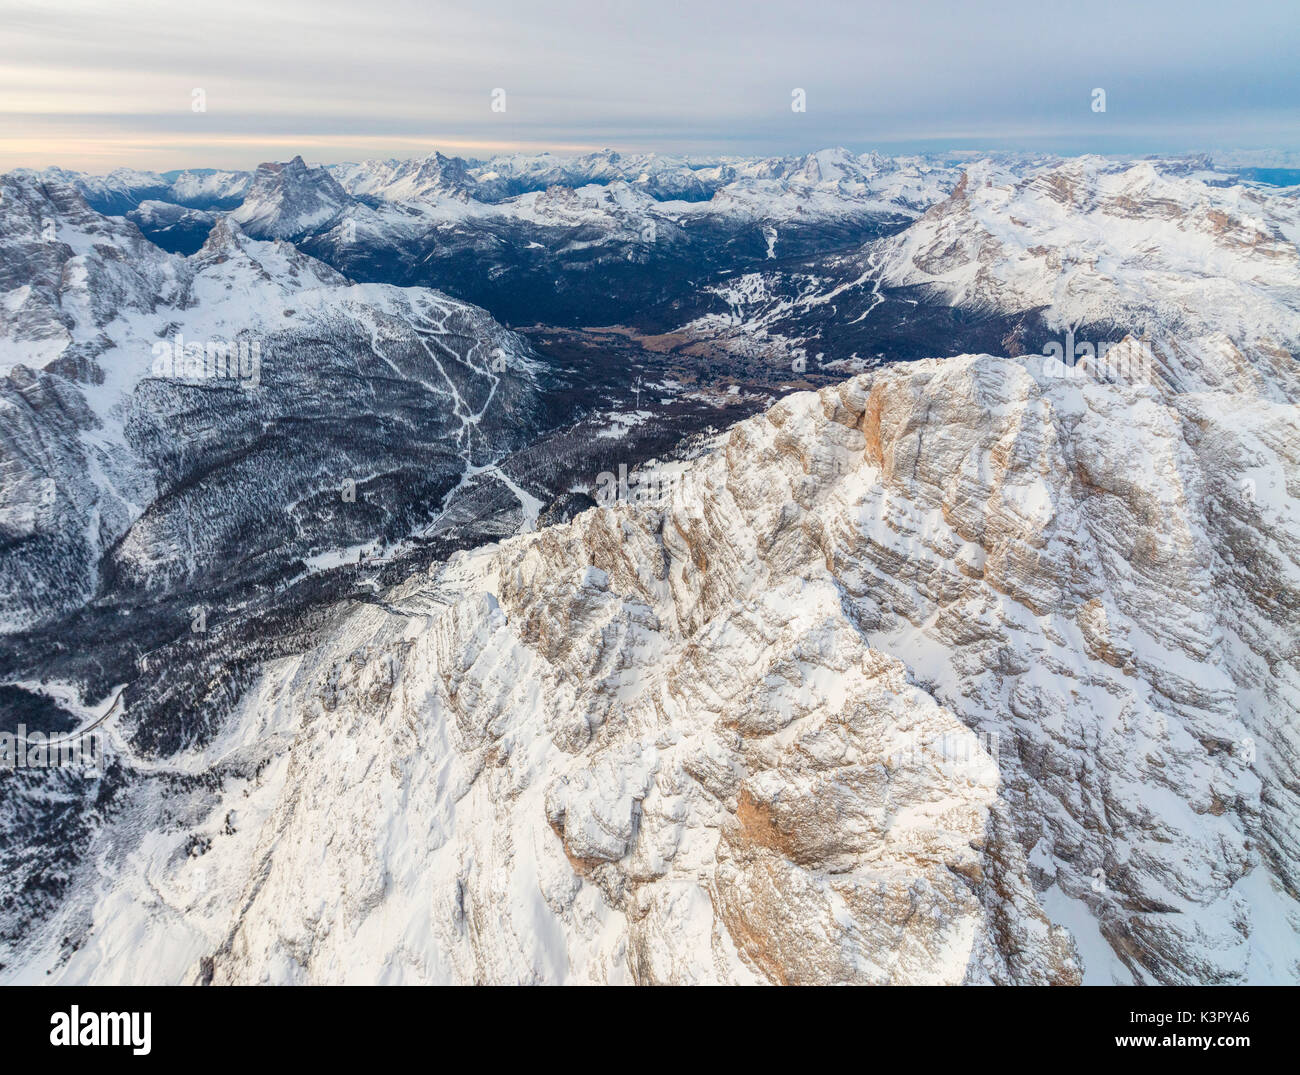 Luftaufnahme von den schneebedeckten Gipfeln des Monte Cristallo Cortina D'Ampezzo Dolomiten Provinz Belluno Venetien Italien Europa Stockfoto